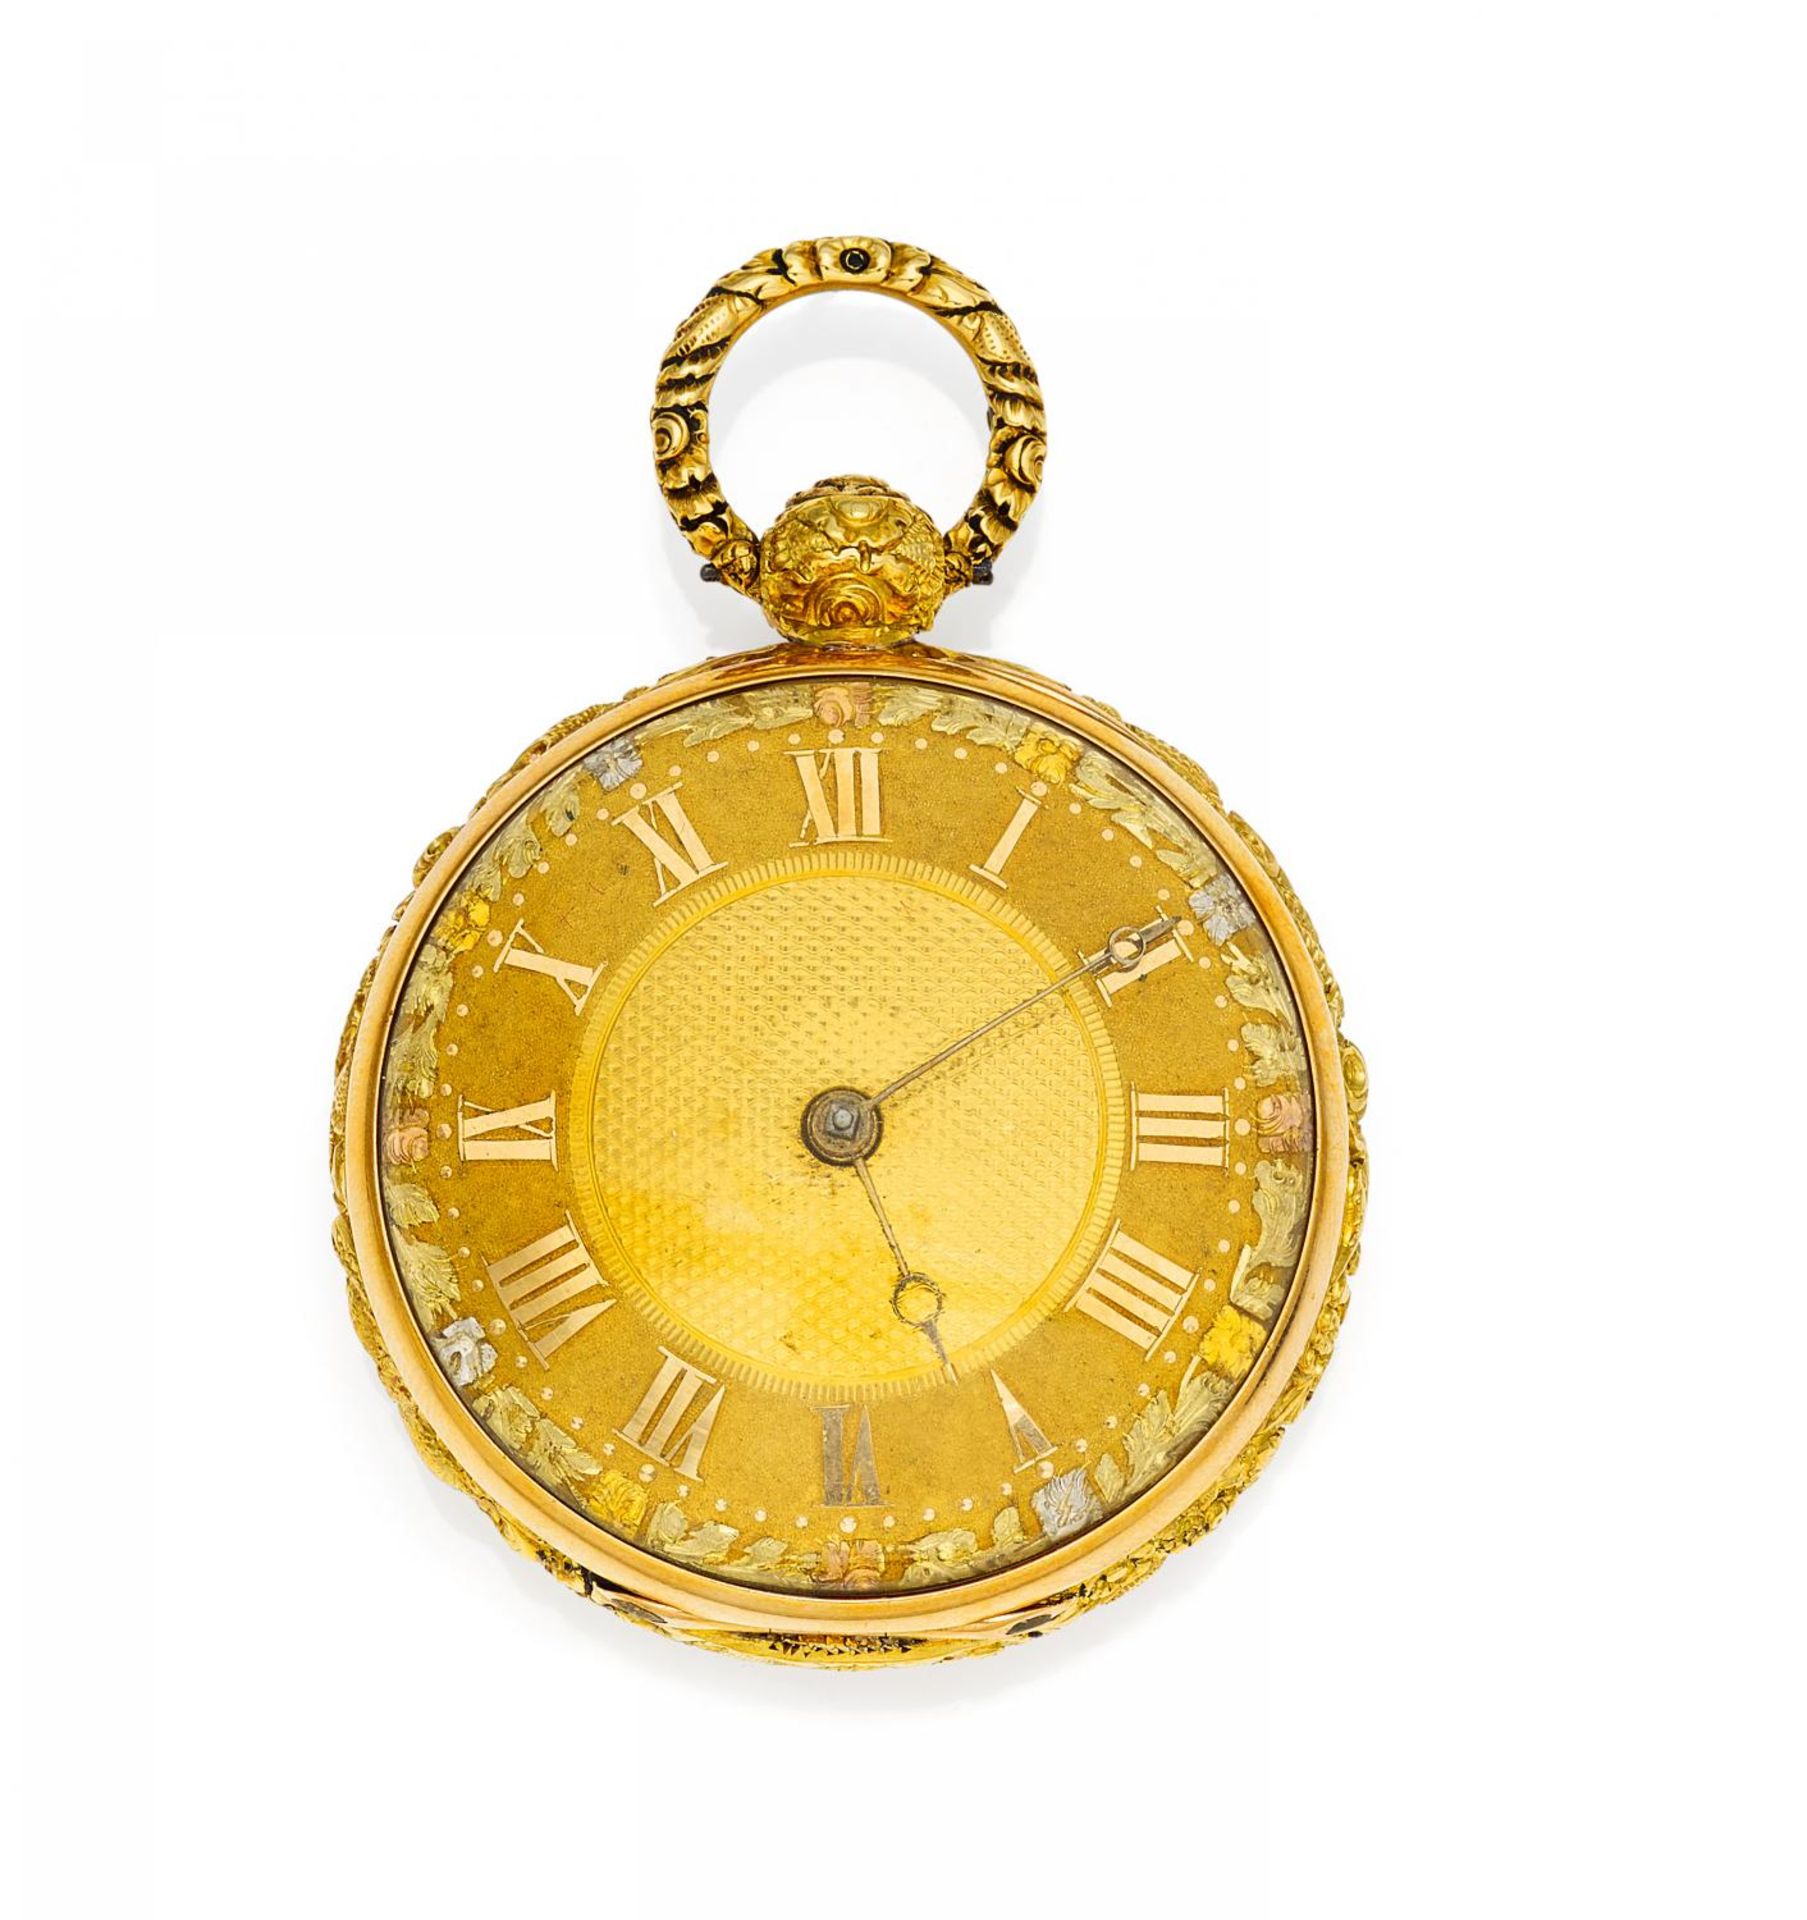 LAMPORT England, um 1820 Taschenuhr. Schlüsselaufzug. 750/- Gelbgold, Zffbl. vergoldet, graviert,